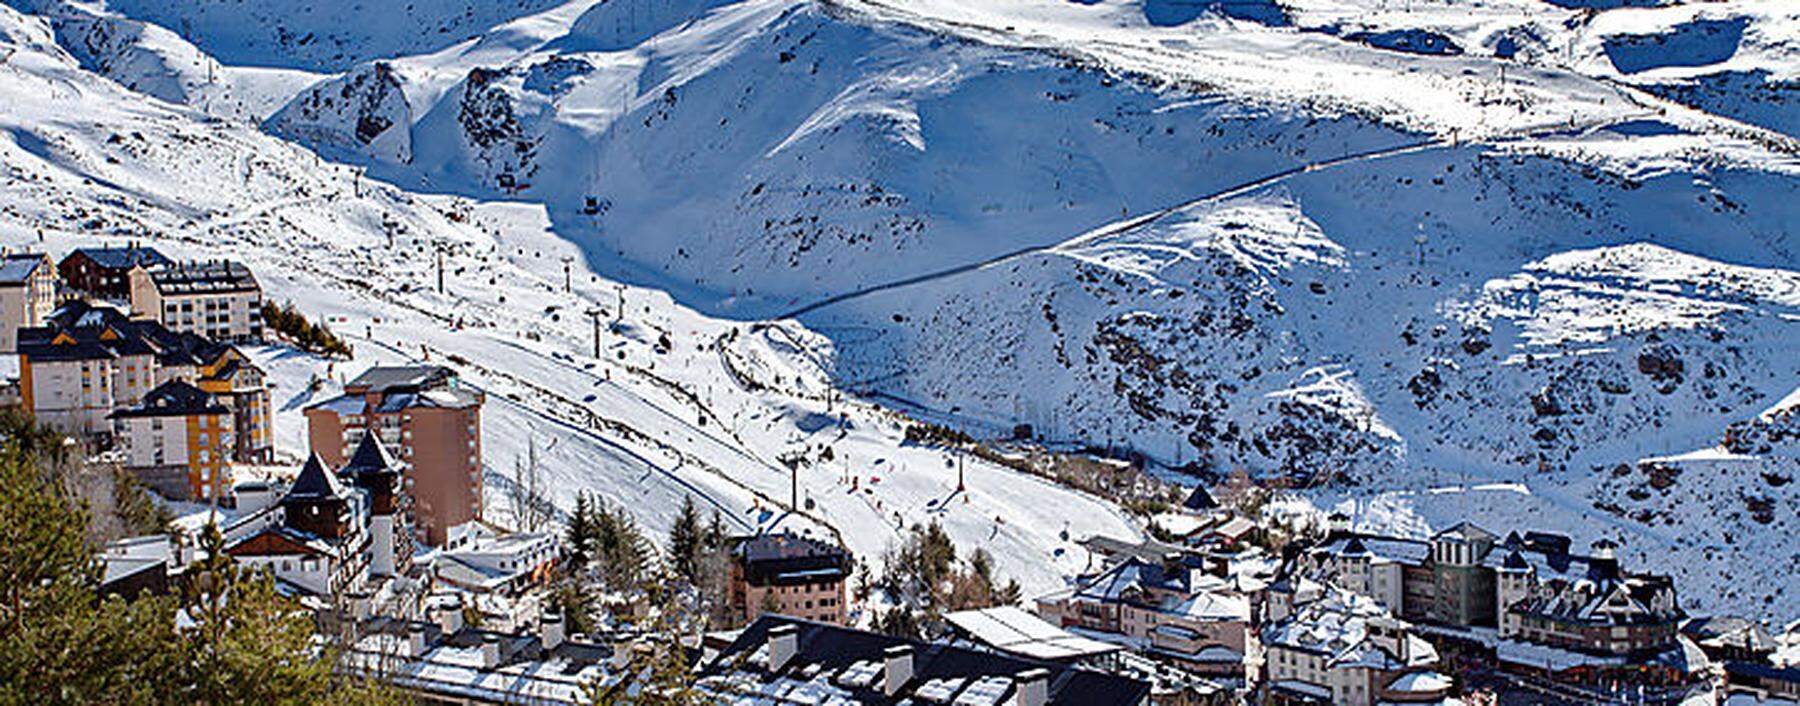 Pradollano in der Sierra Nevada ist das südlichste wie höchste gelegene Skigebiet Spaniens. 